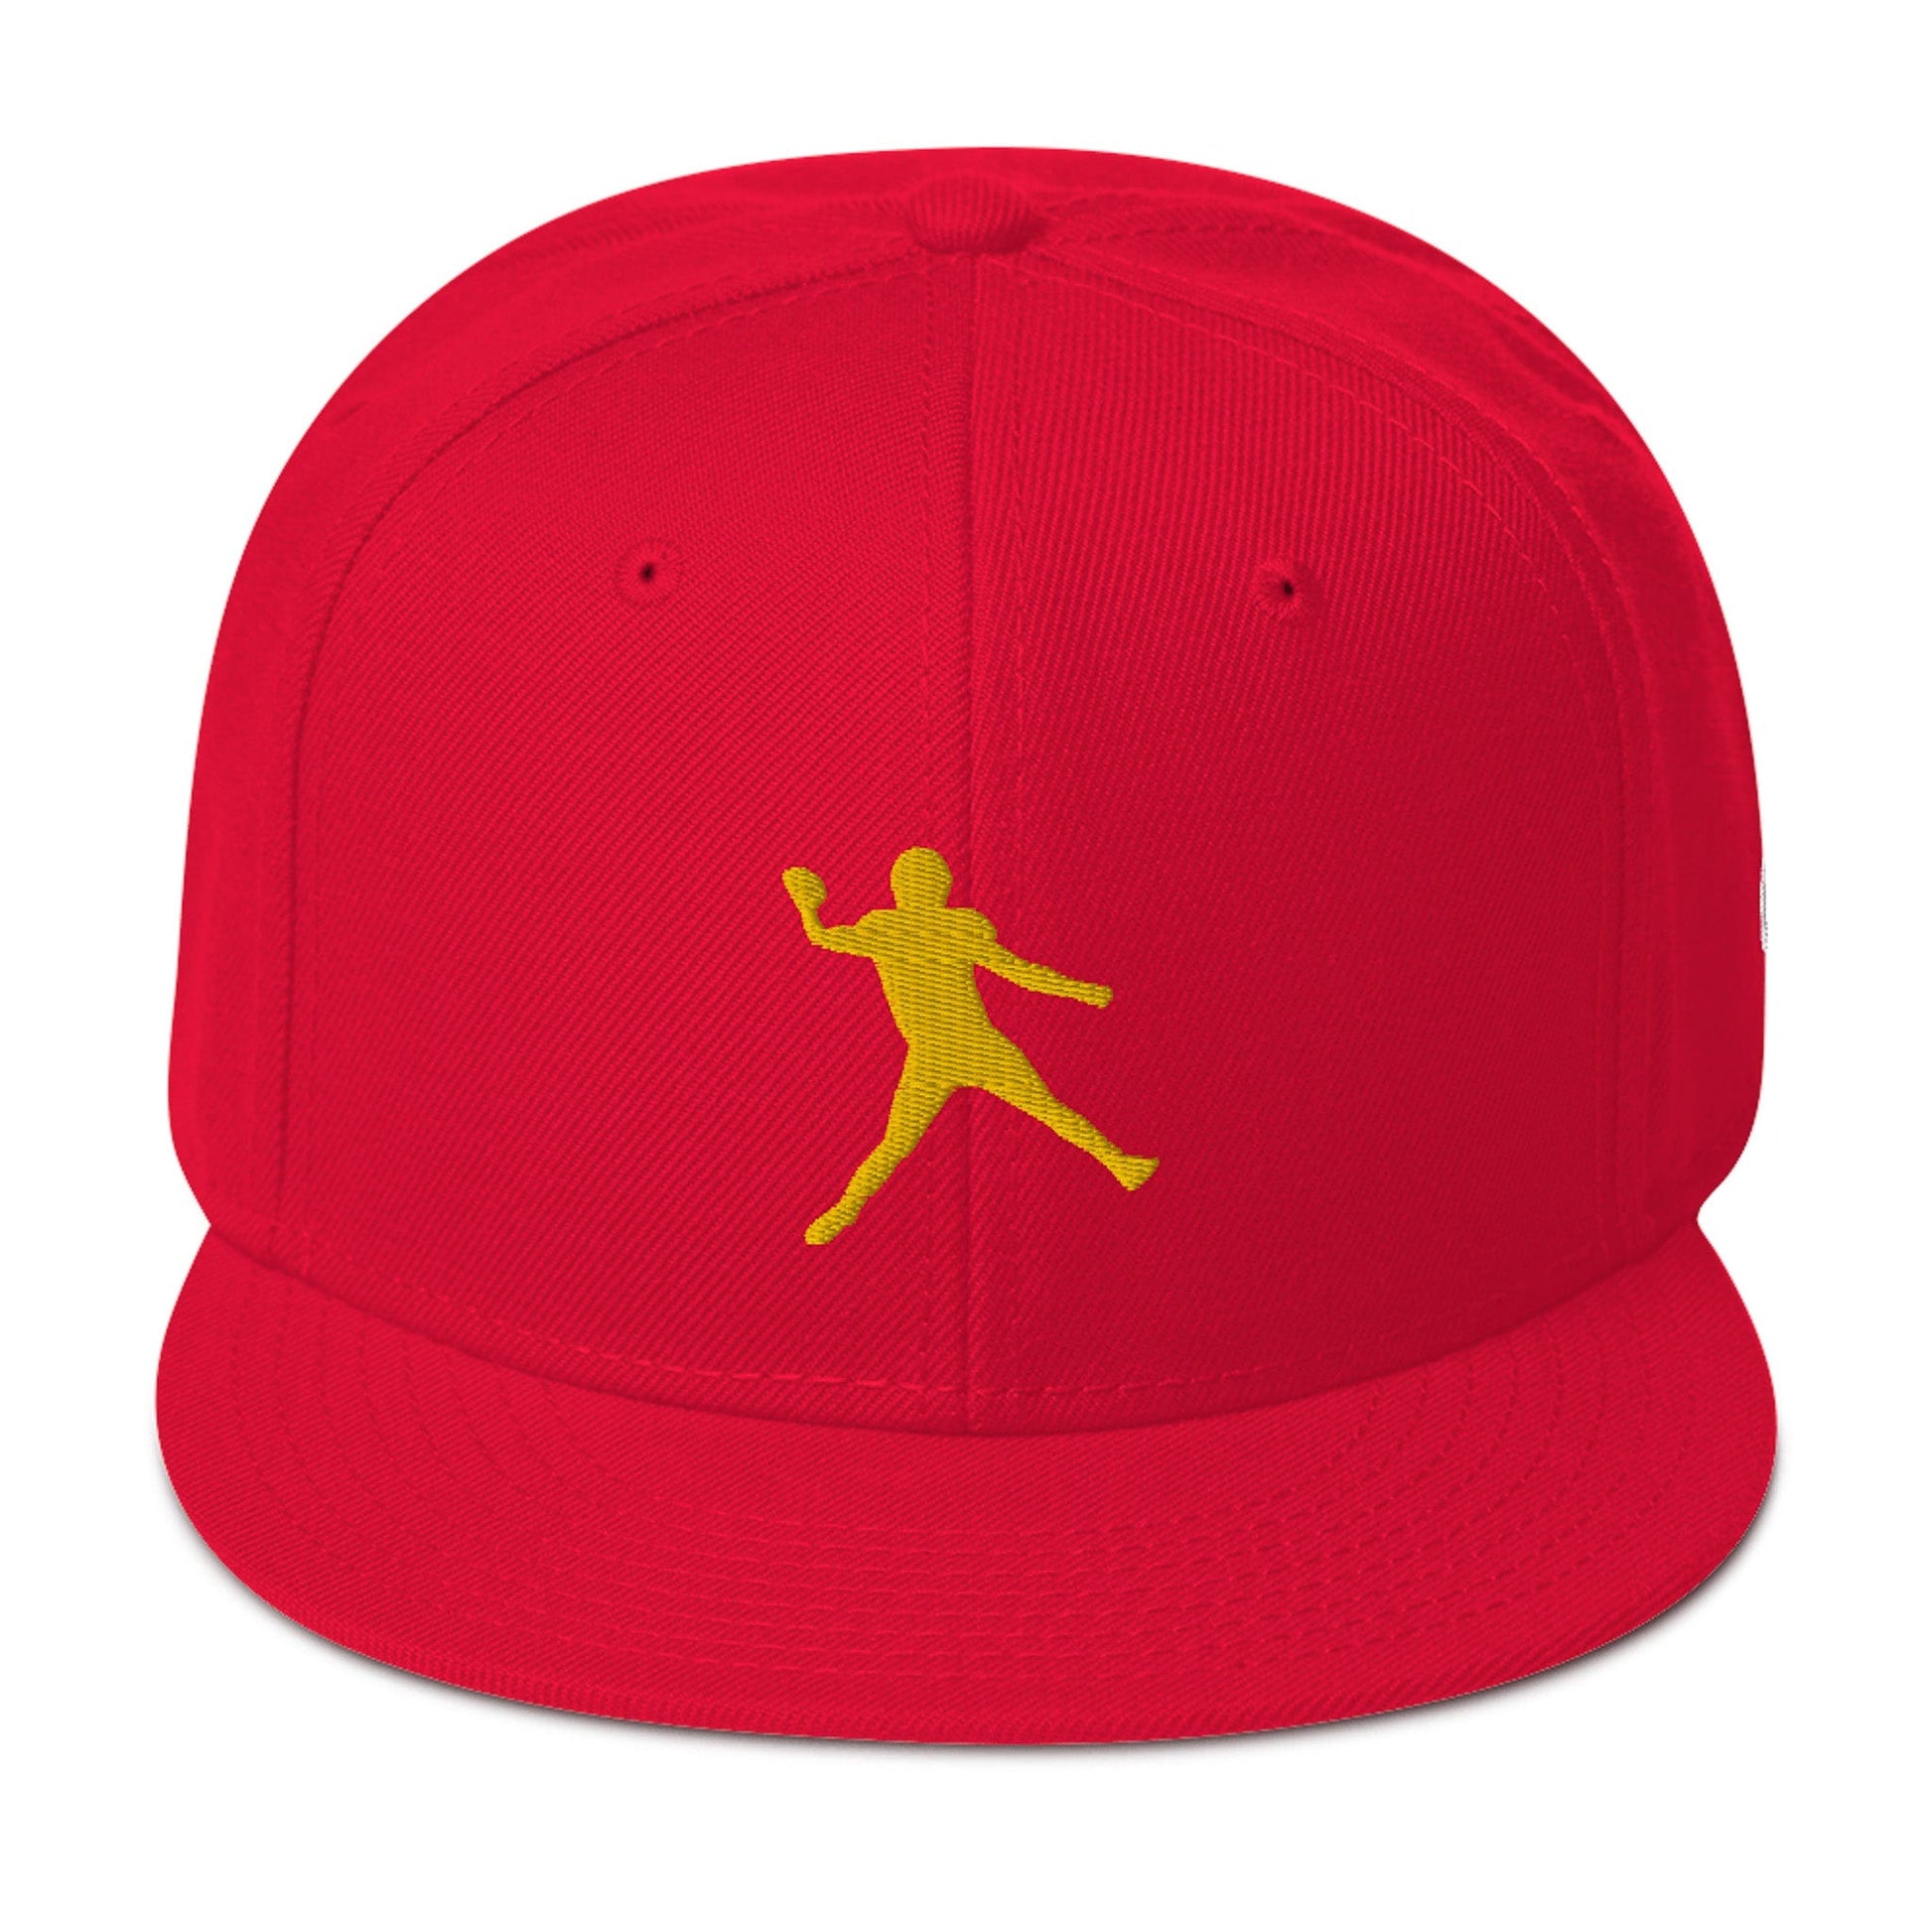 KC SWag Kansas City Chiefs Red Air Mahomes Flat Snapback hat